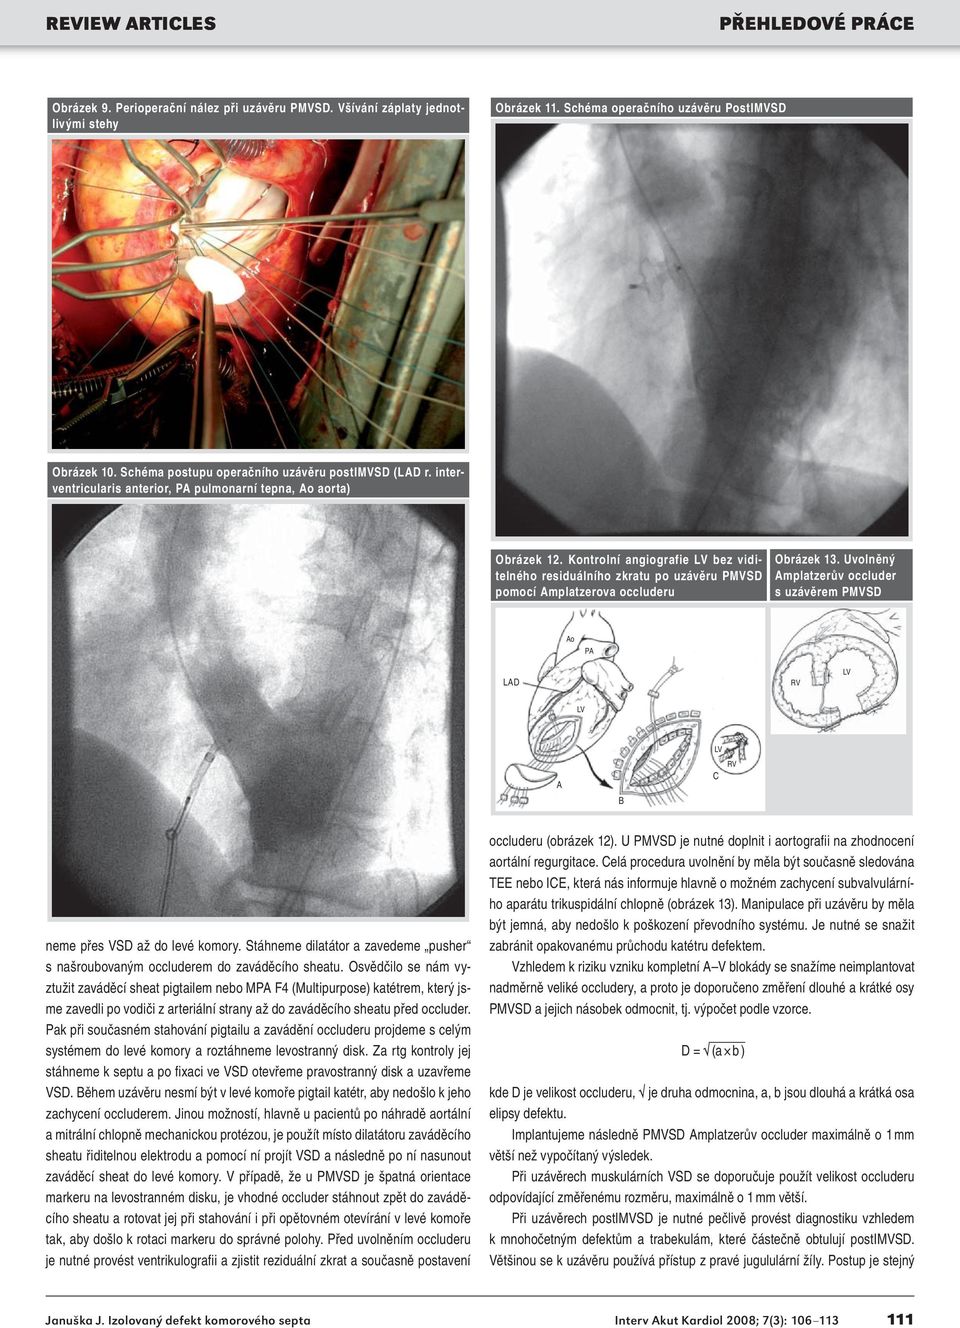 Kontrolní angiografie LV bez viditelného residuálního zkratu po uzávěru PMVSD pomocí Amplatzerova occluderu Obrázek 13.